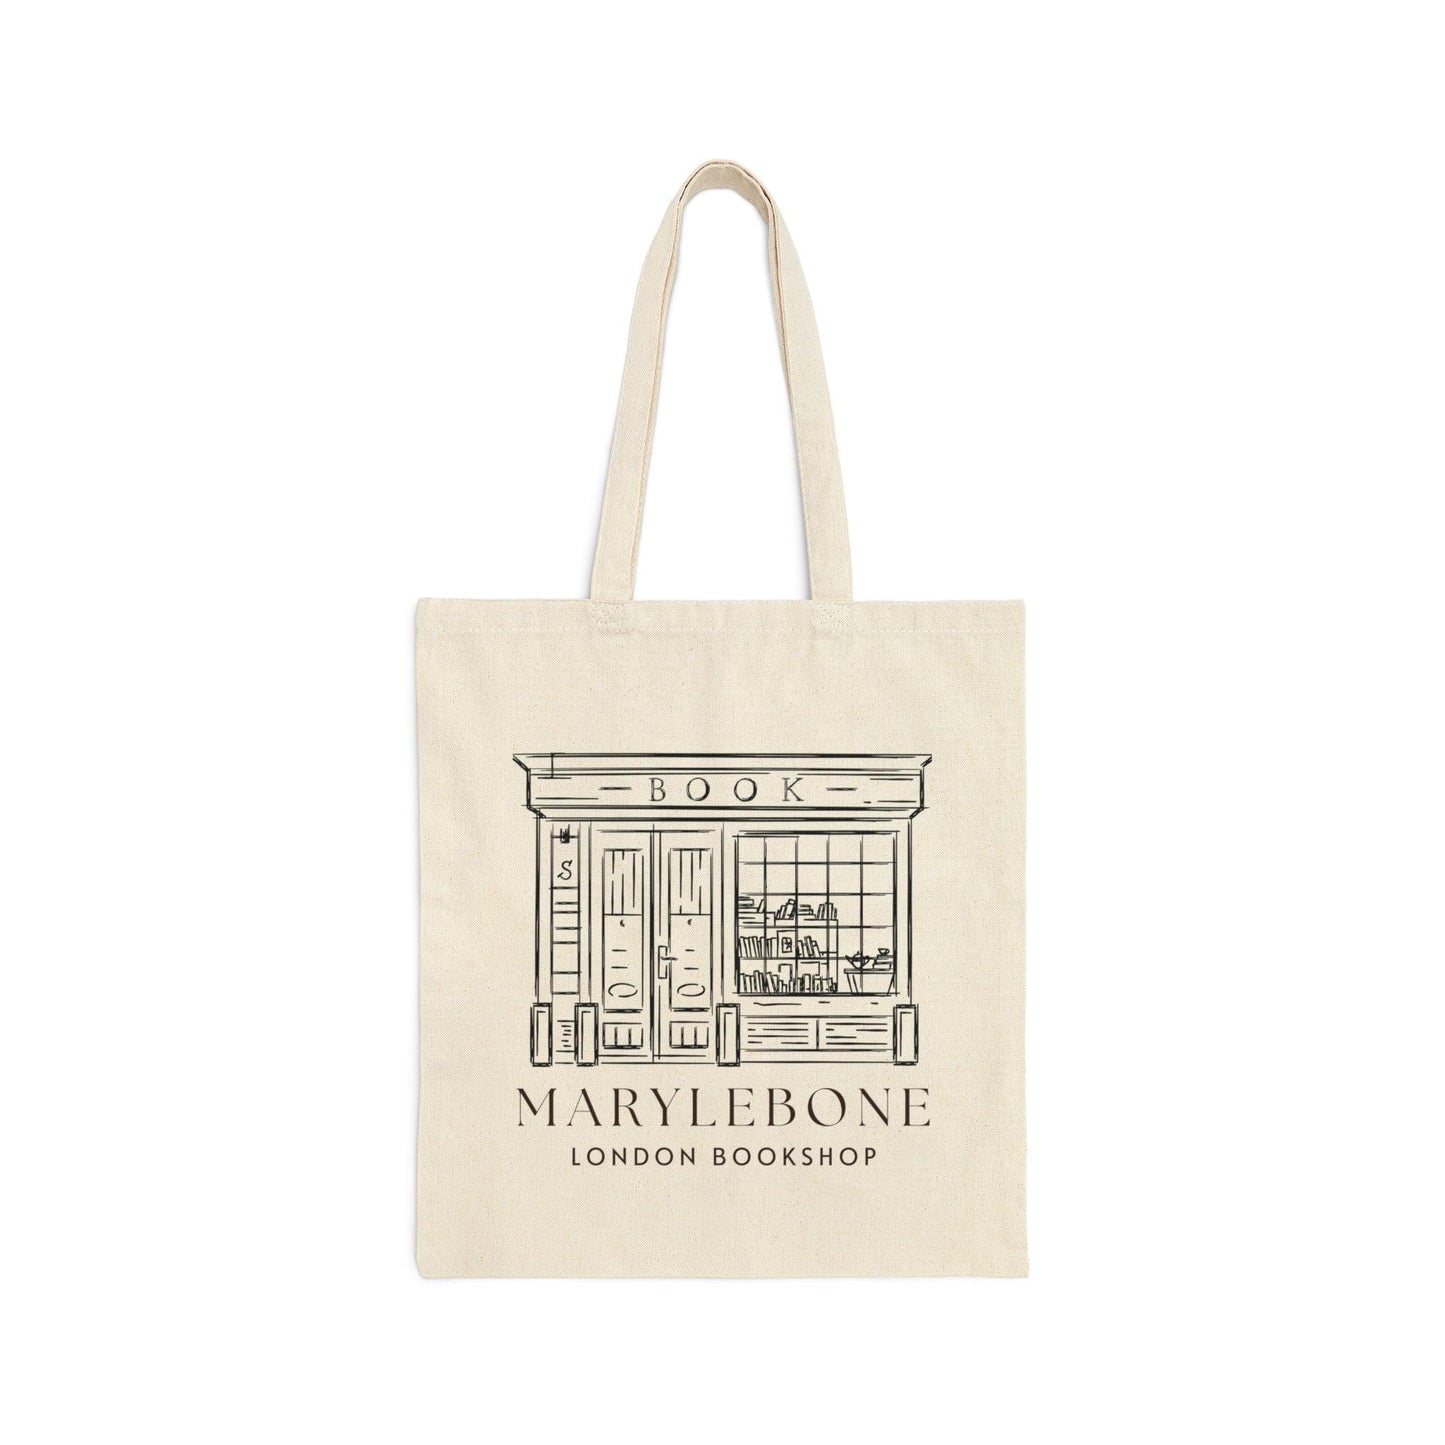 Marylebone London Bookshop Canvas Tote Bag - Departures Print Shop